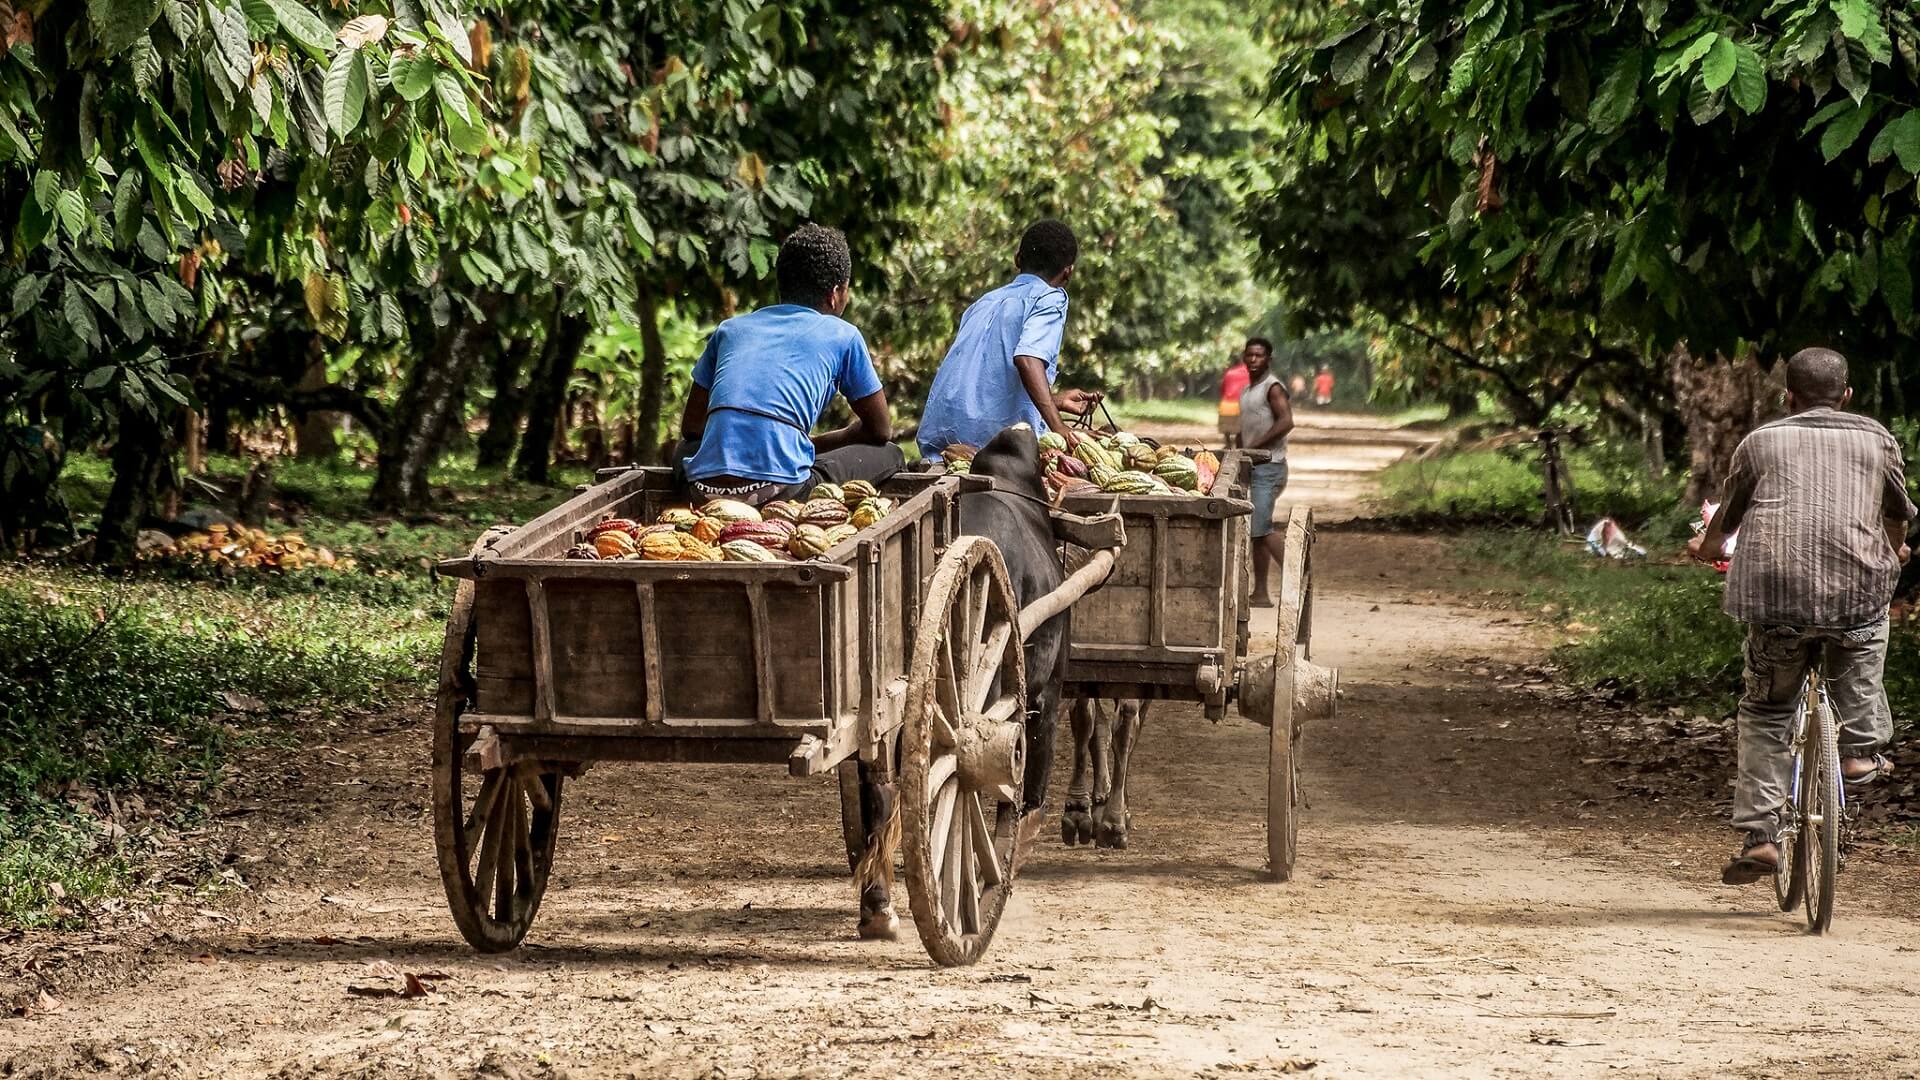 Wie kein anderes Produkt verdeutlicht die madagassische Vanilleproduktion damit die Grenzen von Fair Trade.